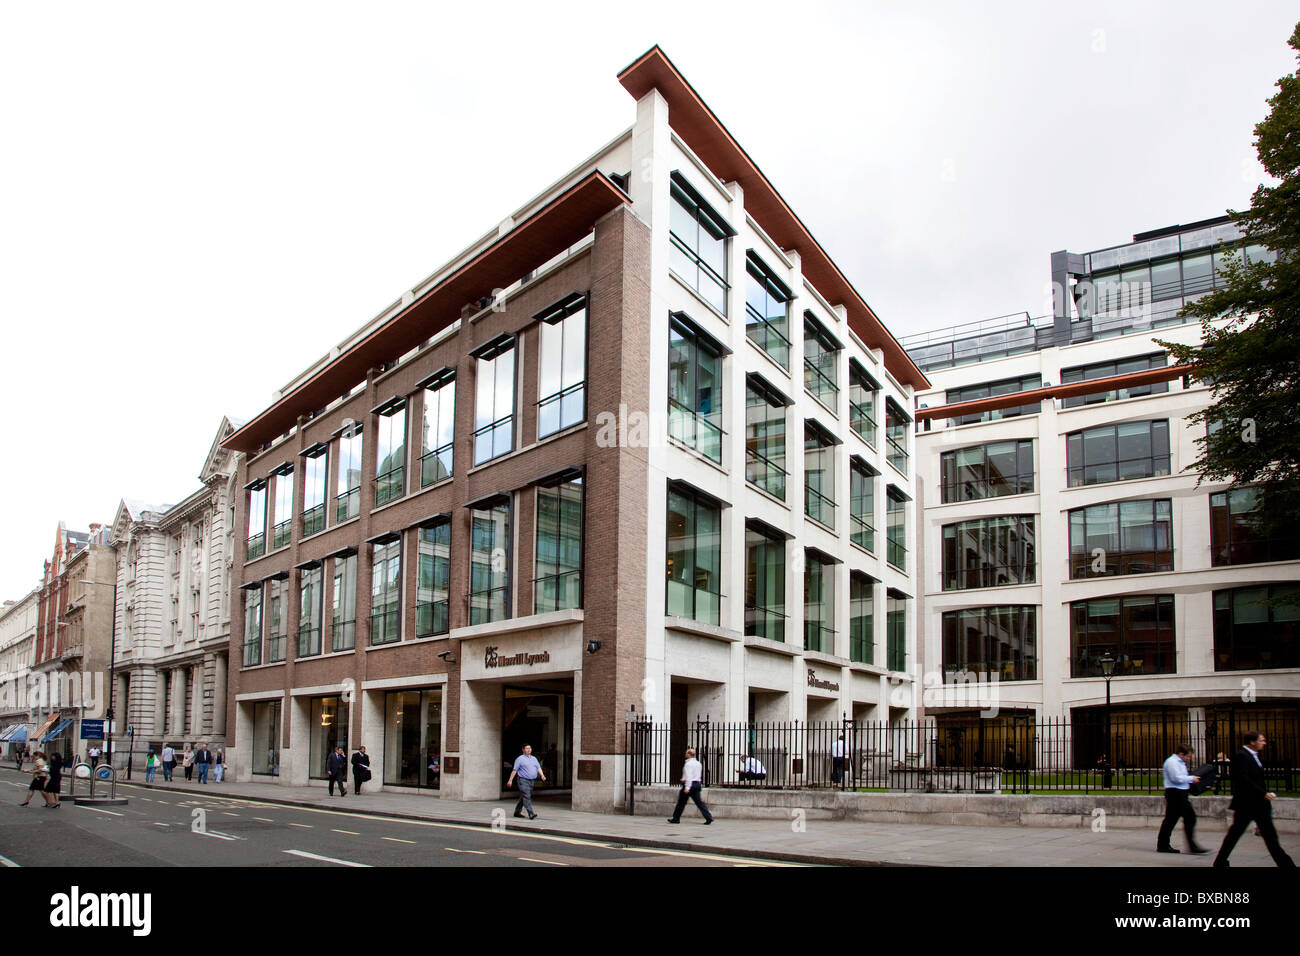 Siège de la banque d'investissement et des services financiers société Merrill Lynch à Londres, Angleterre, Royaume-Uni, Europe Banque D'Images